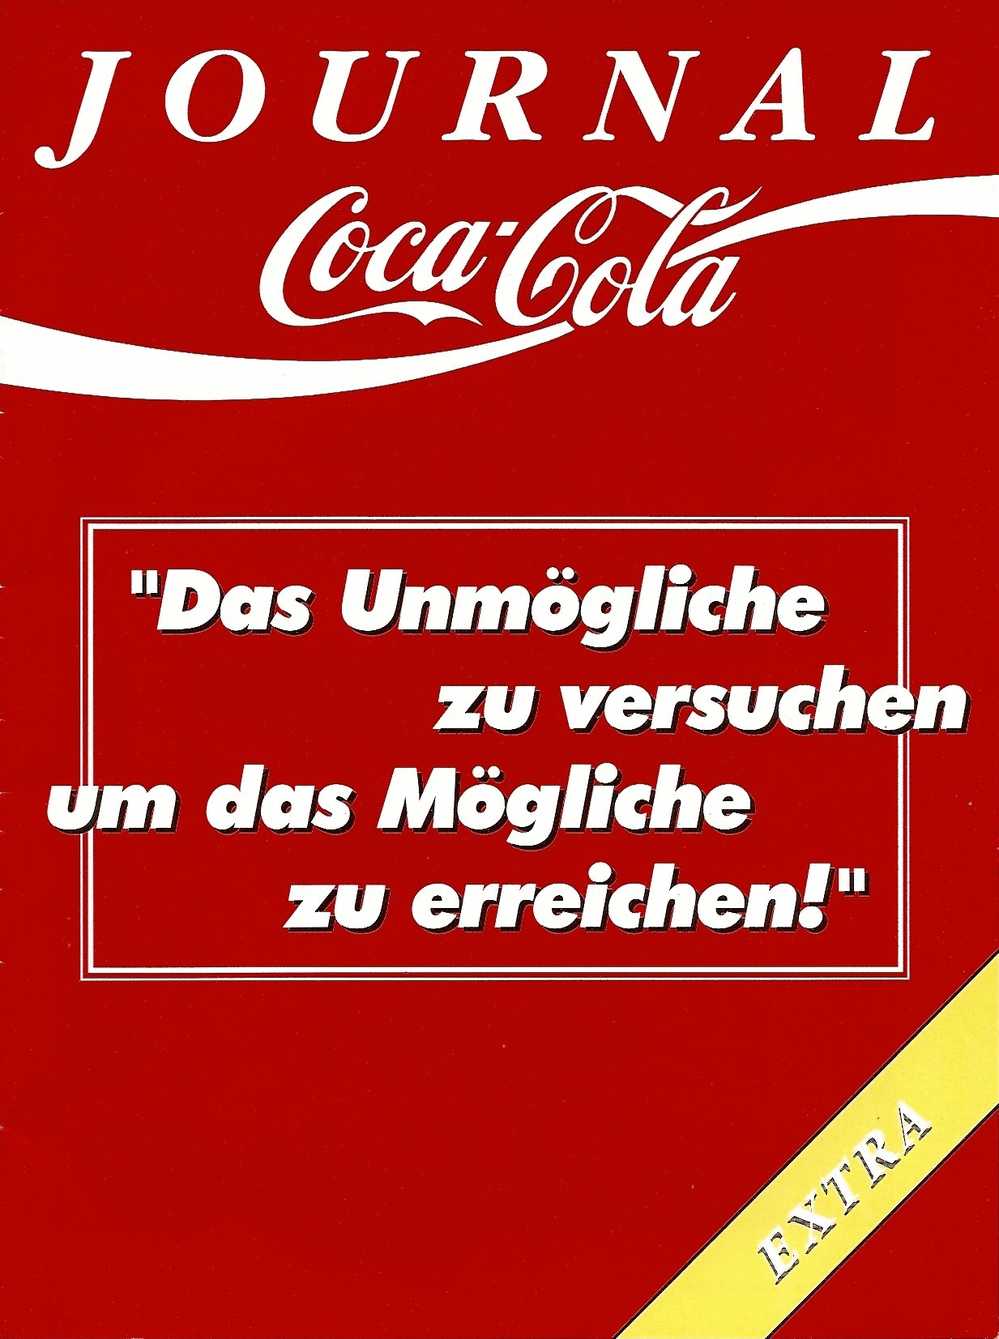 Coca-Cola Journal Extra - Januar 1997 - Zeitschrift Für Mitglieder Und Freunde Des Coca-Cola Organisation In Deutschland - Essen & Trinken